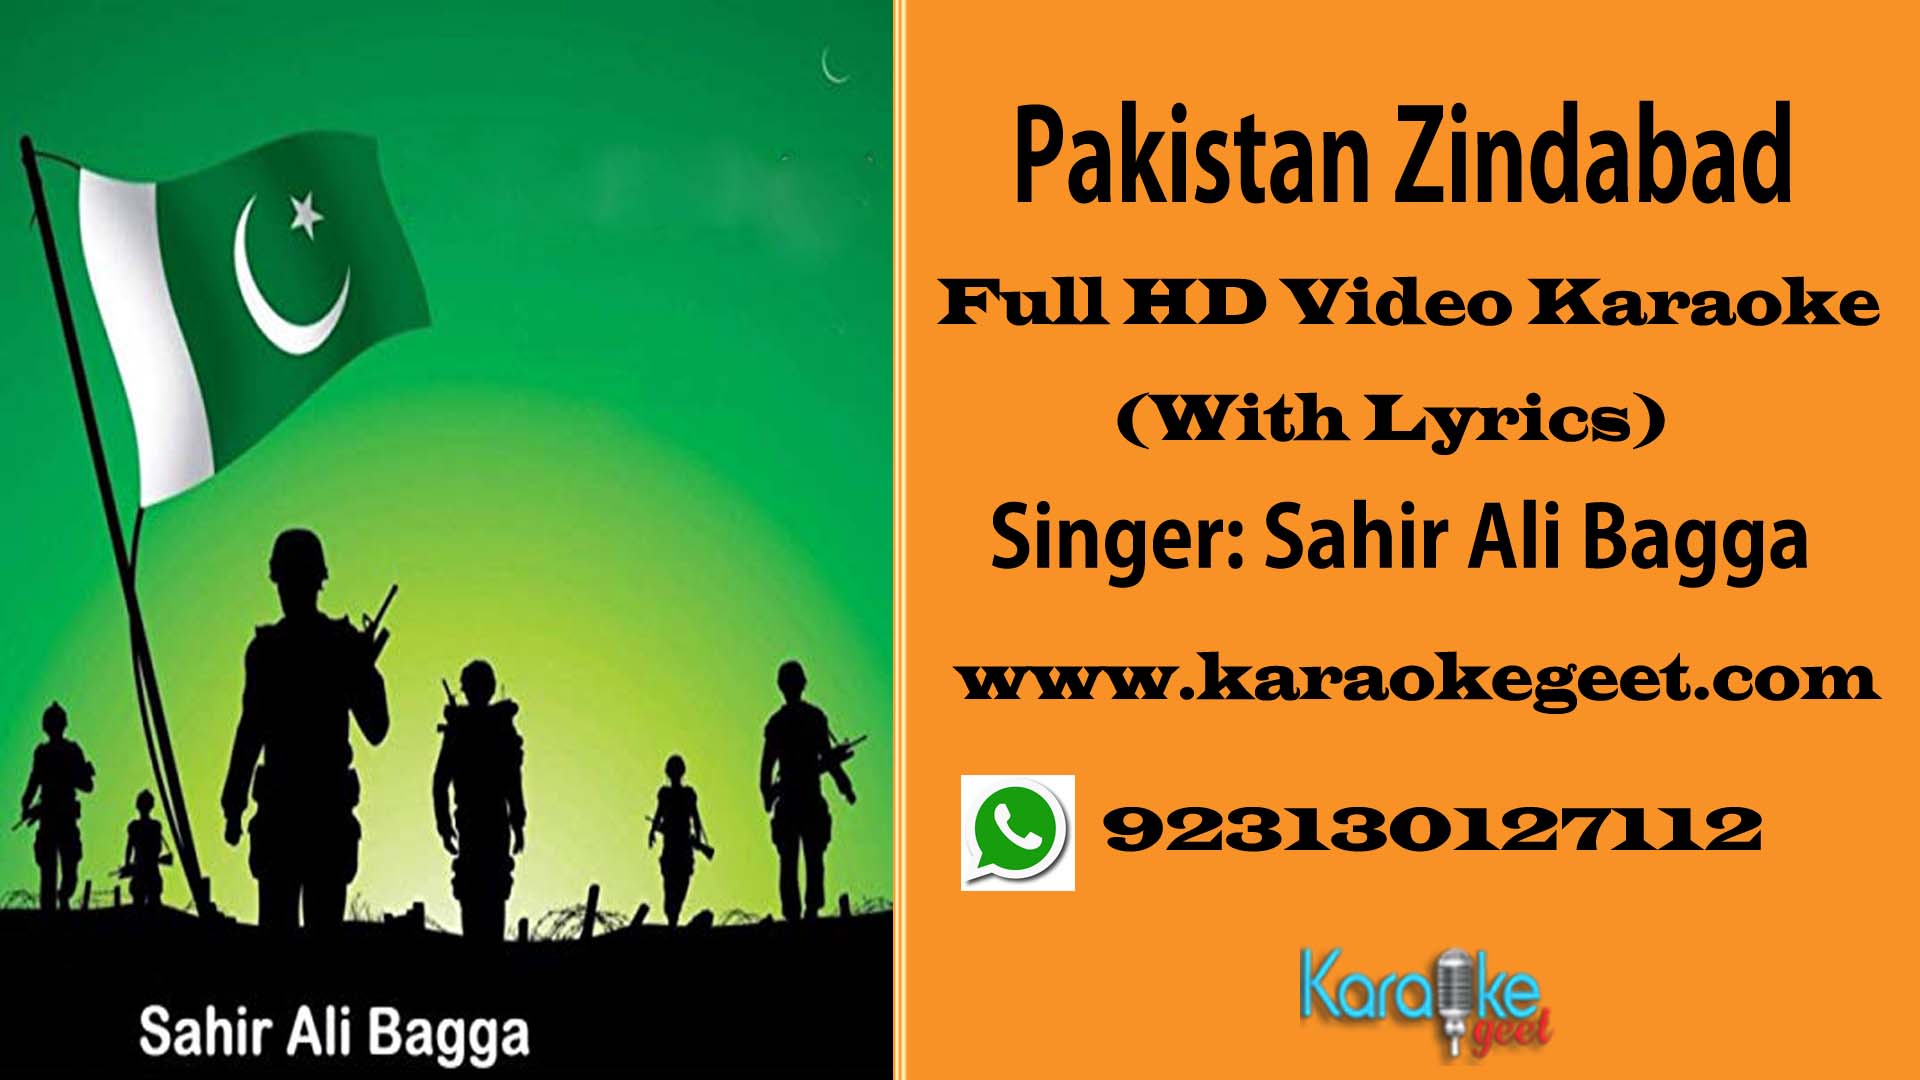 Pakistan Zindabad Video Karaoke